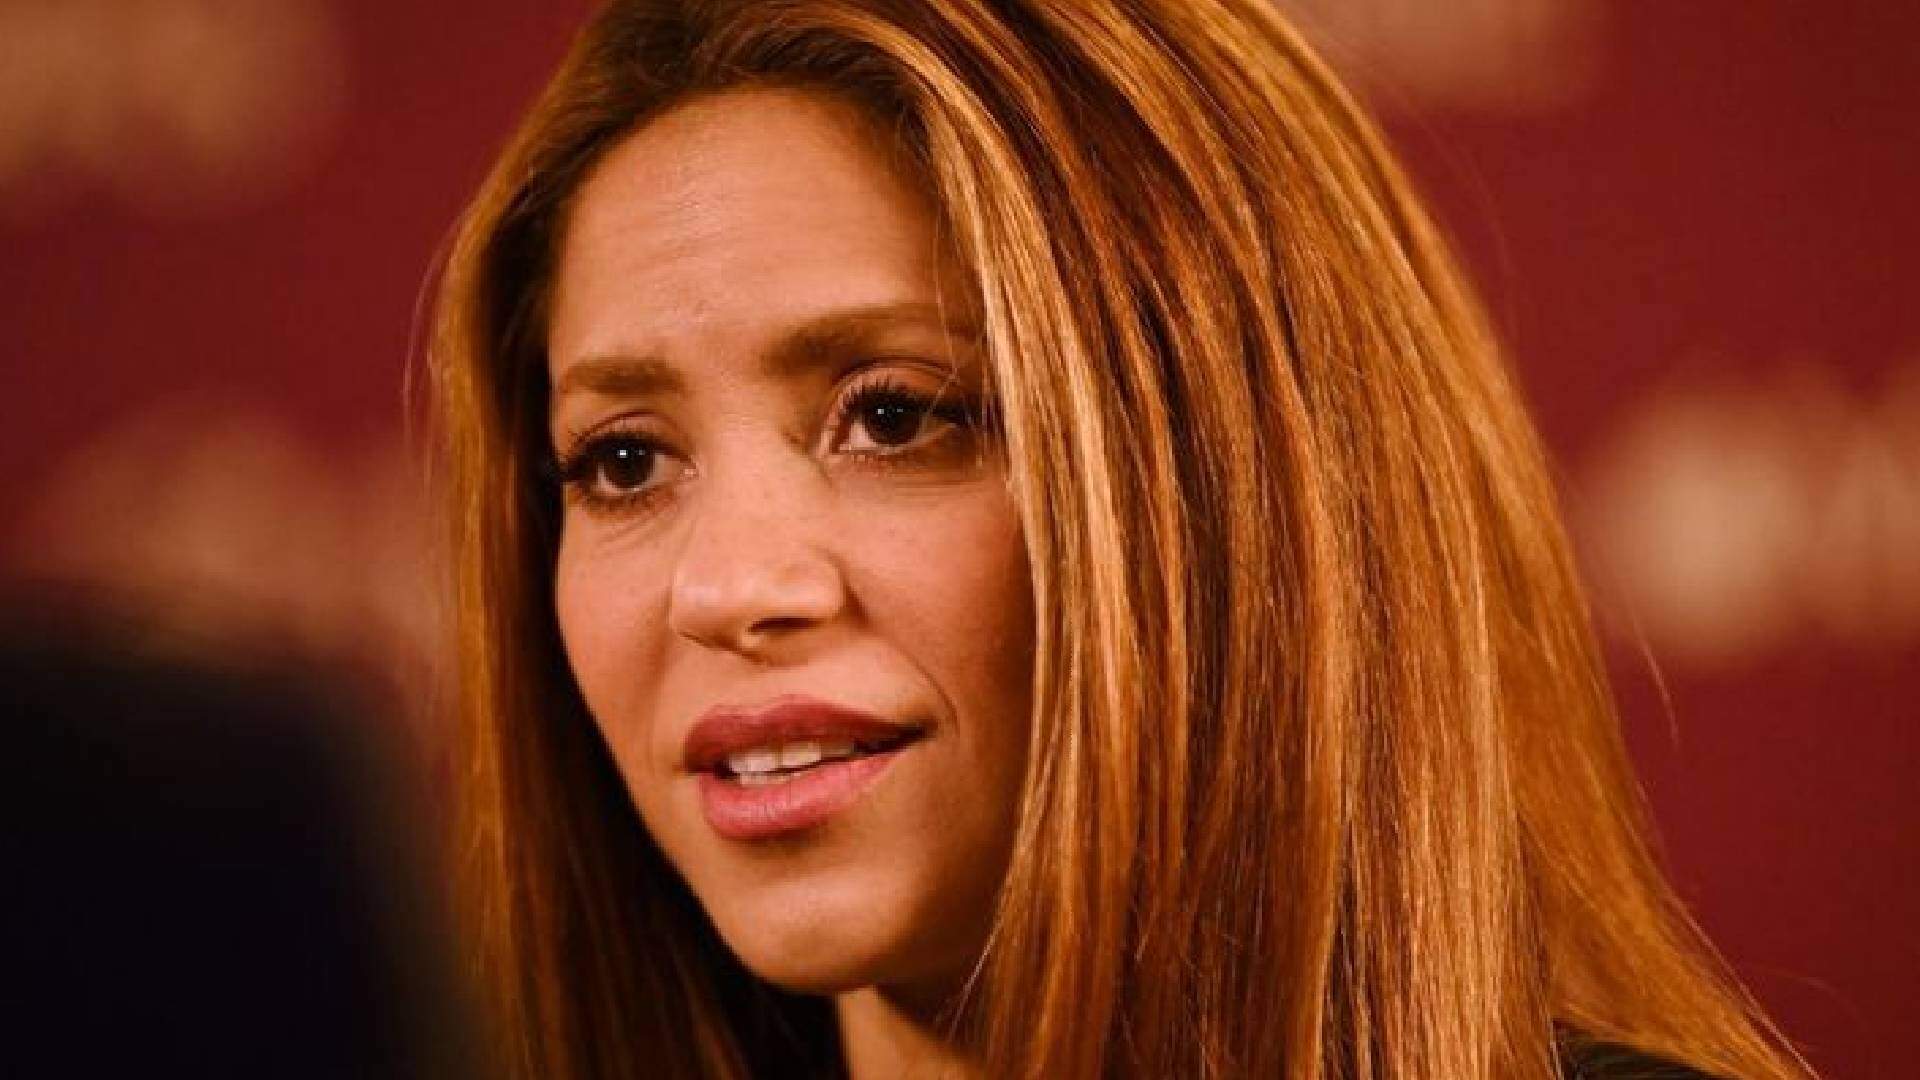 Outro problemão para Shakira! Tribunal espanhol inicia novo processo contra cantora, motivo vem à tona e causa polêmica